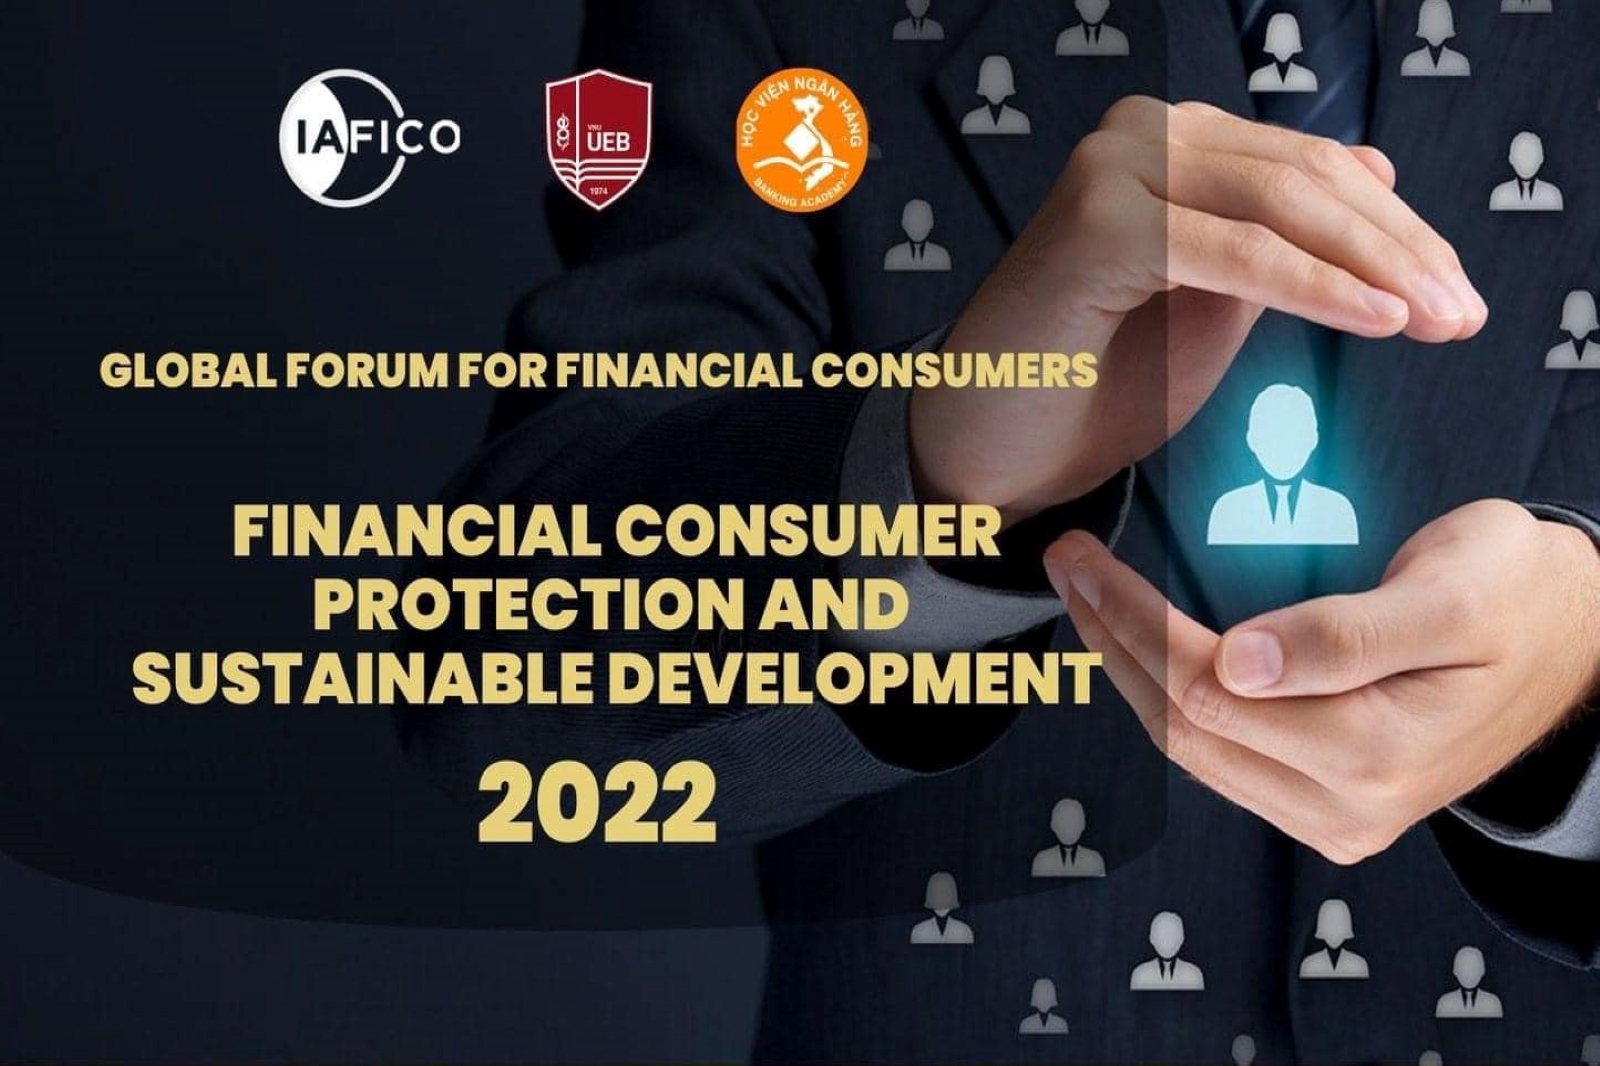 Thư mời tham dự Hội thảo Khoa học quốc tế: Bảo vệ người tiêu dùng tài chính và phát triển bền vững “Financial consumer protection and sustainable development”